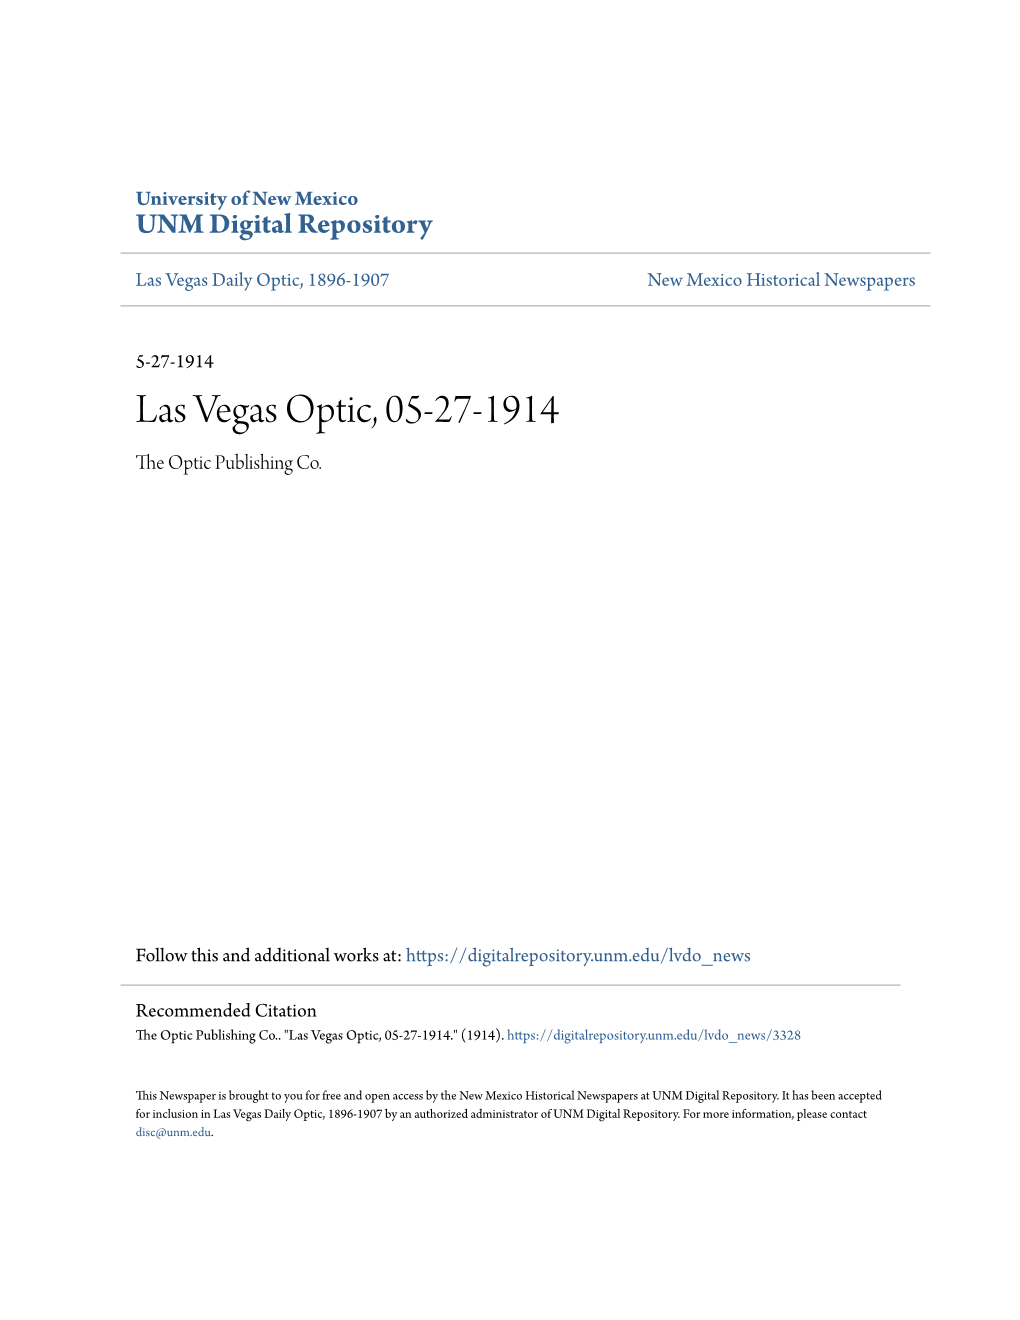 Las Vegas Optic, 05-27-1914 the Optic Publishing Co